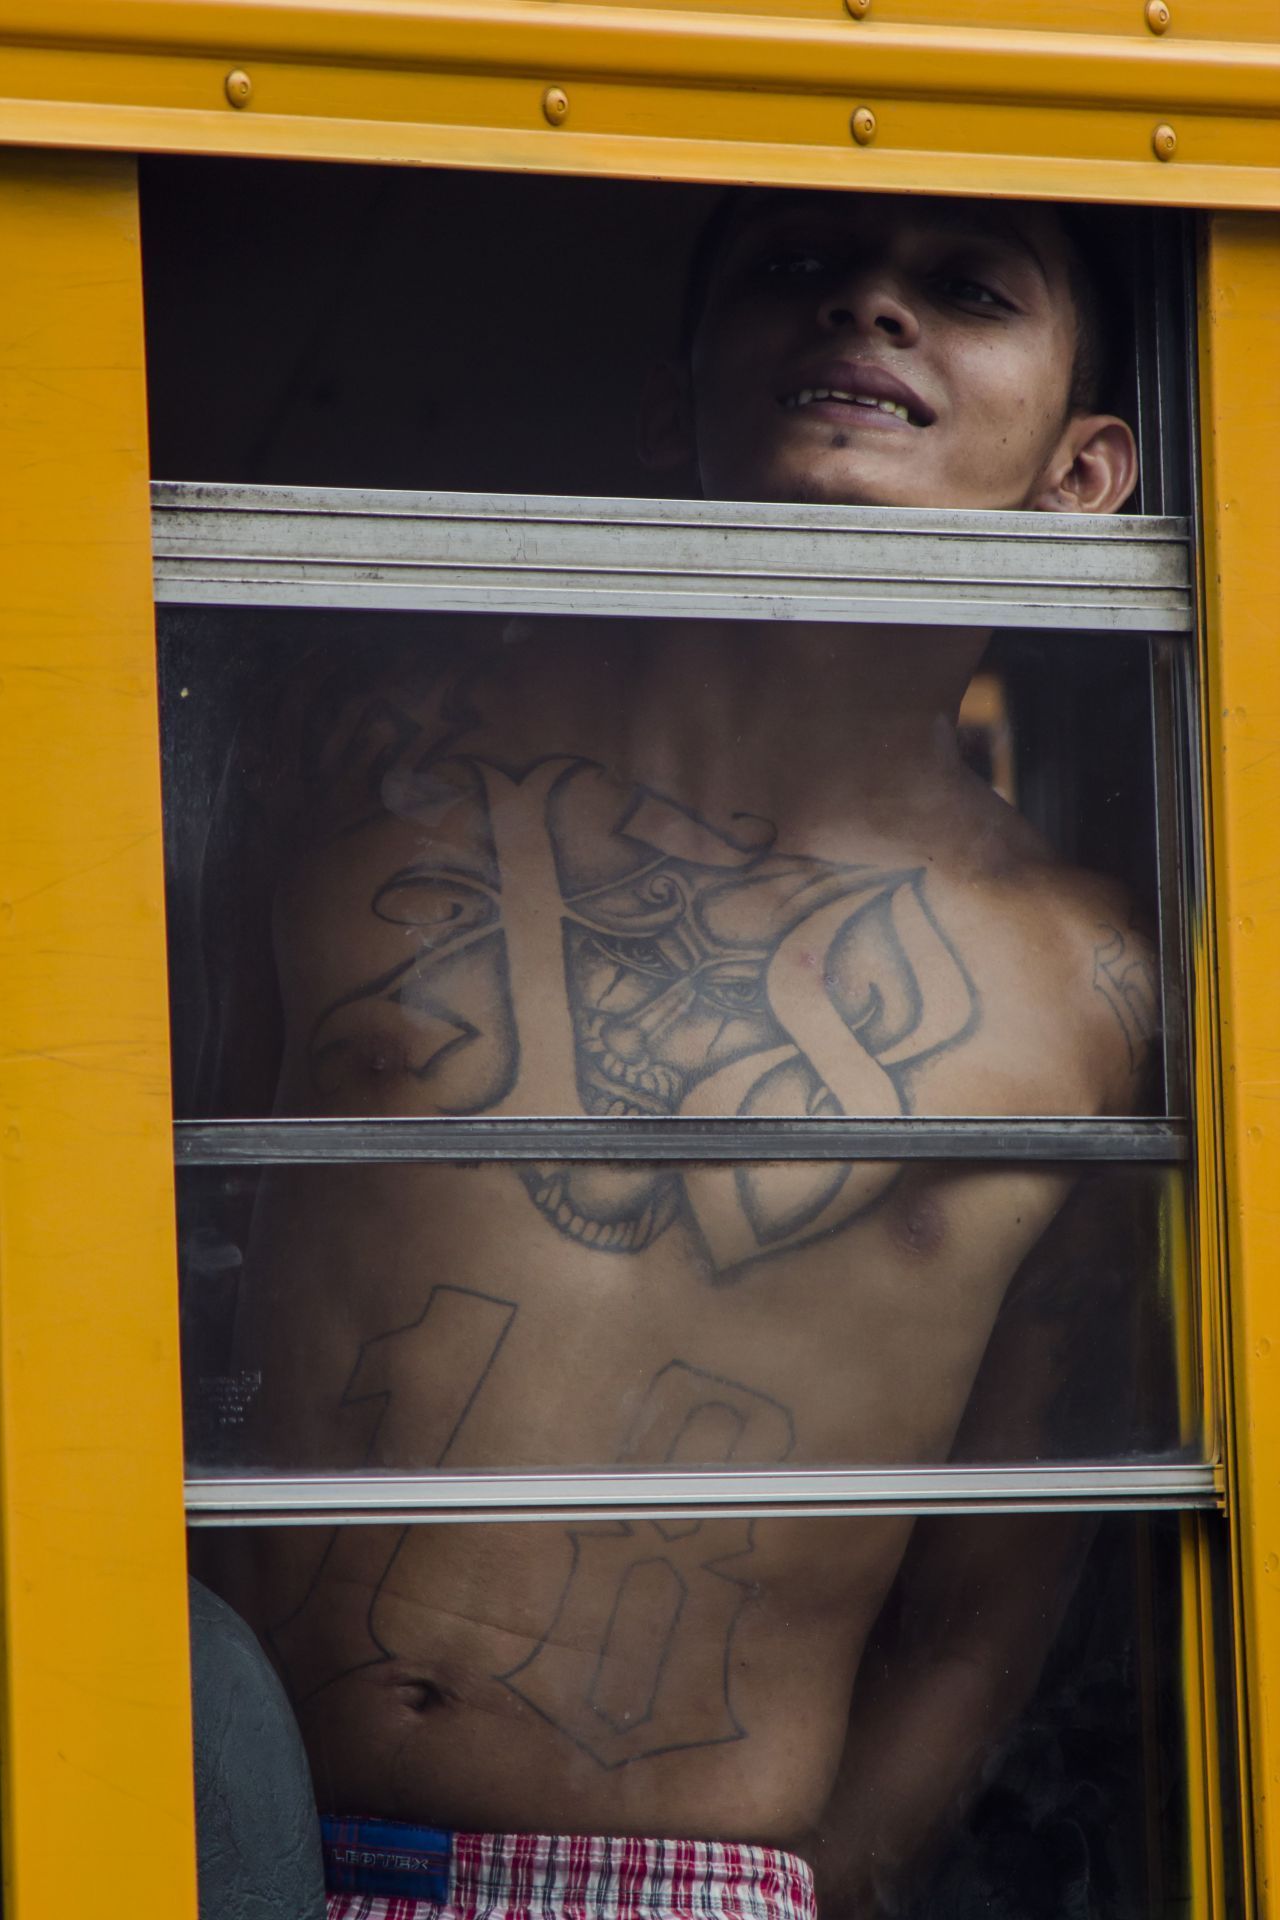 Dieser Junge gehört zur "18th Street Gang", auch "Barrio 18" genannt. Die Gang stammt ebenfalls aus Los Angeles und ist vor allem in Nord- und Mittelamerika aktiv. Sie ist verfeindet mit den "Bloods" und "Crips", ihr größter Rivale ist aber die "Mara Salvatrucha".